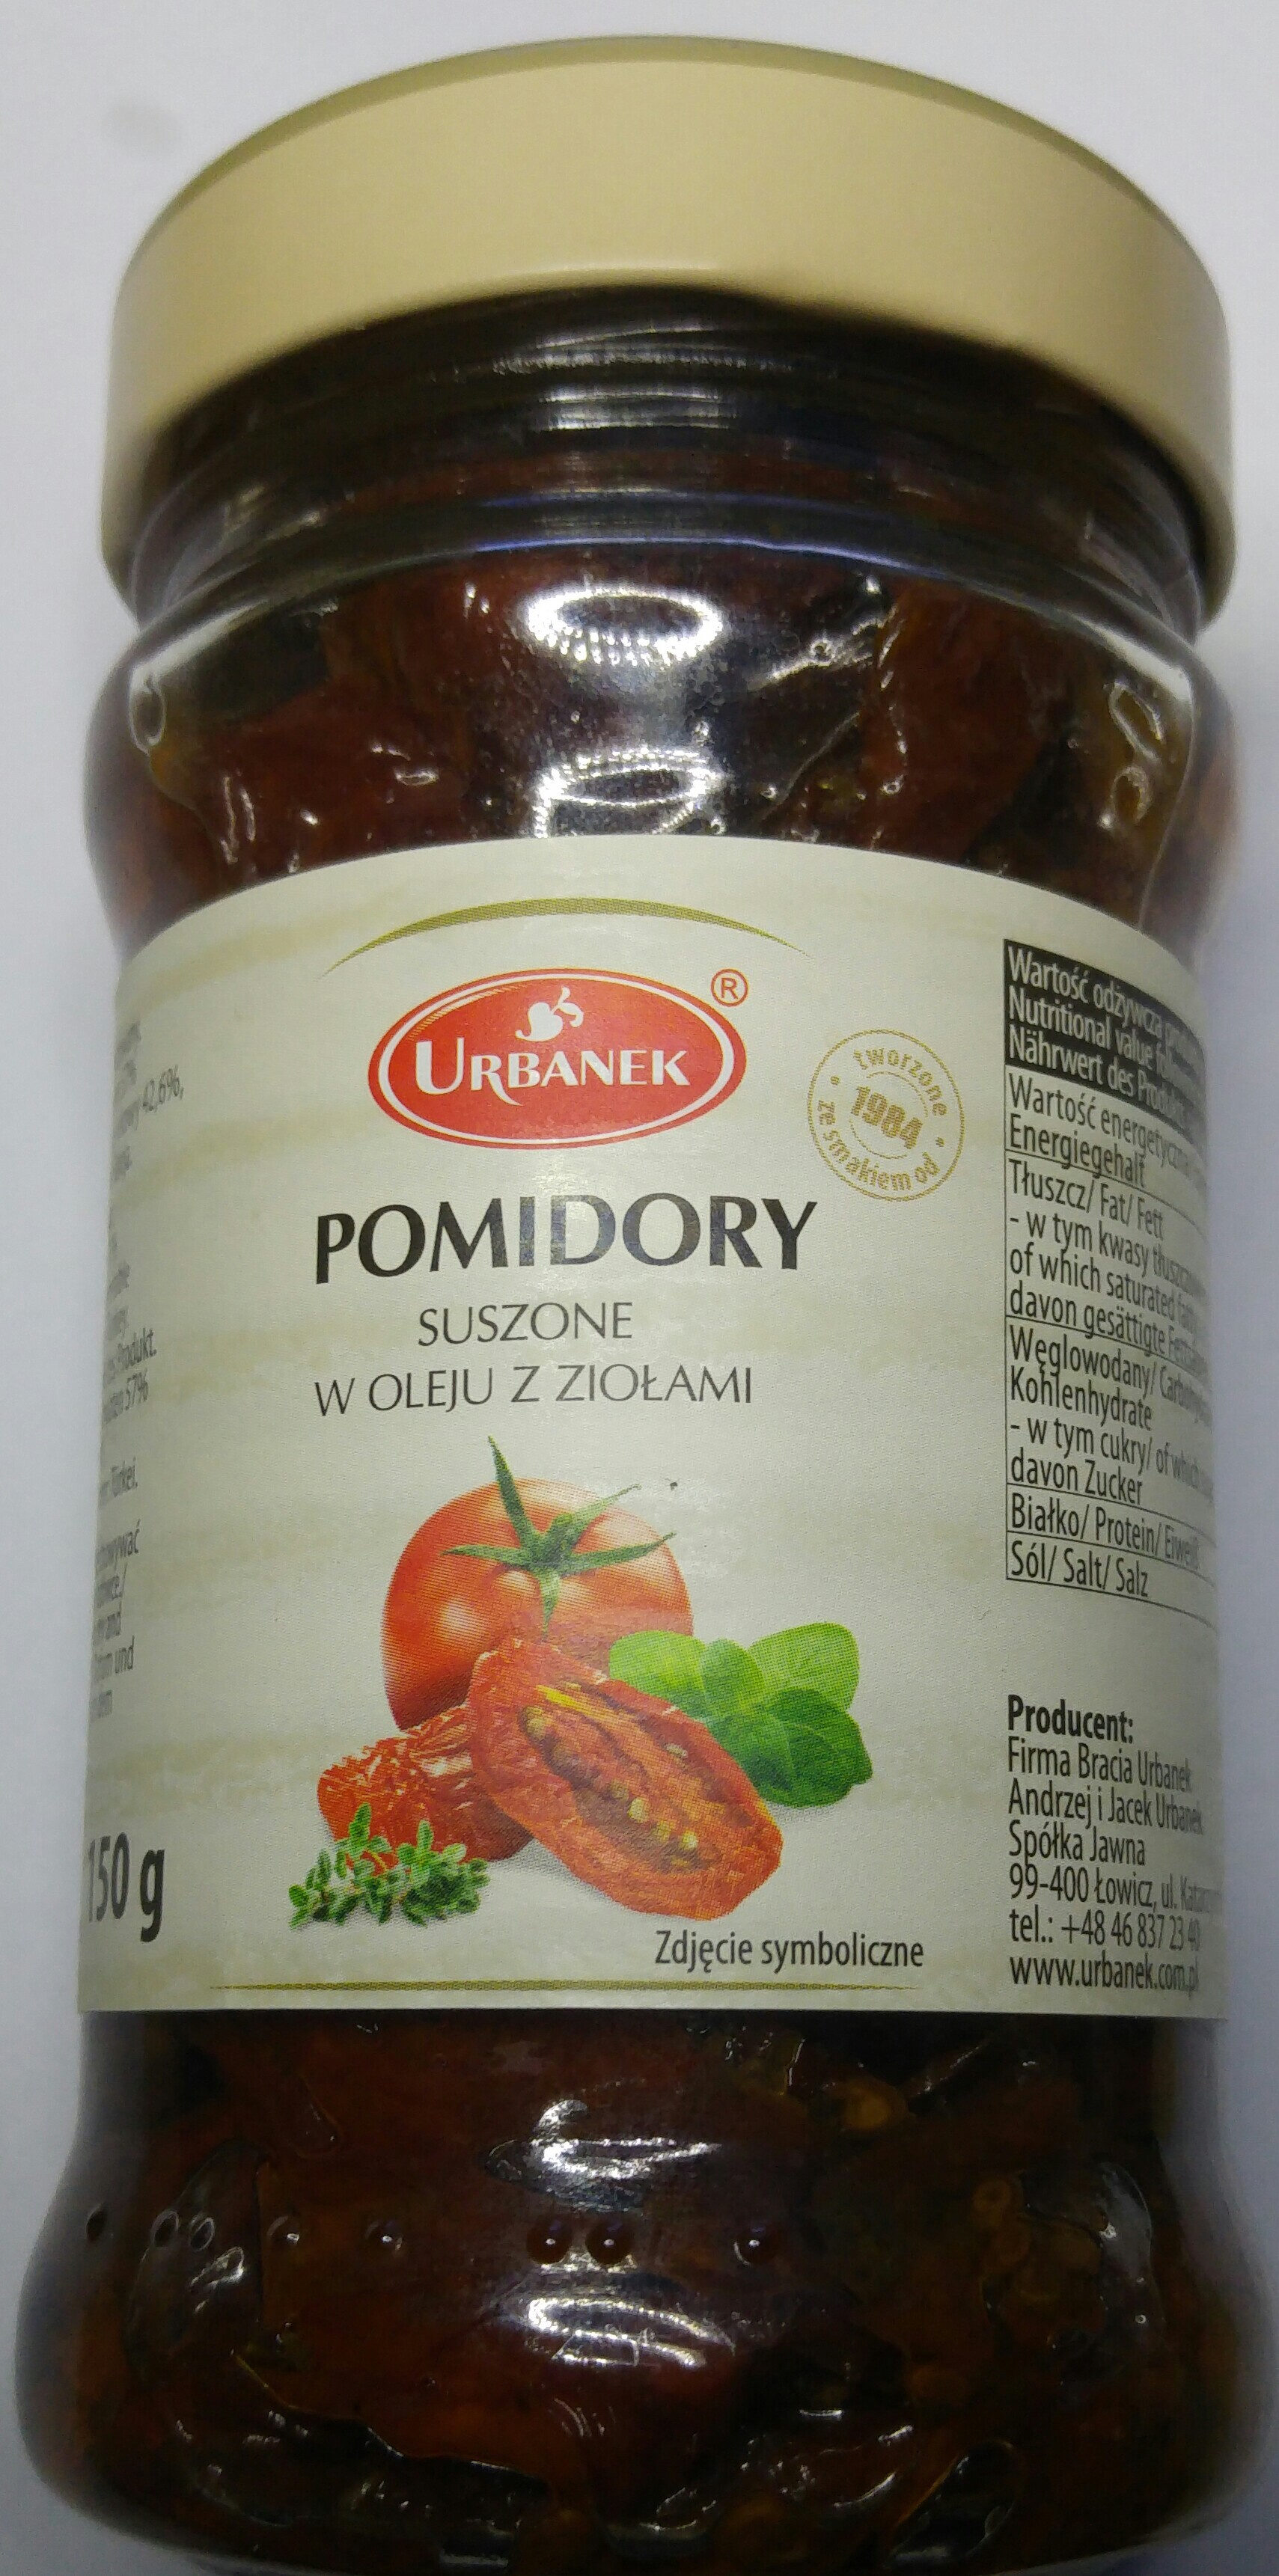 Pomidory suszone w oleju z ziołami. - Product - pl